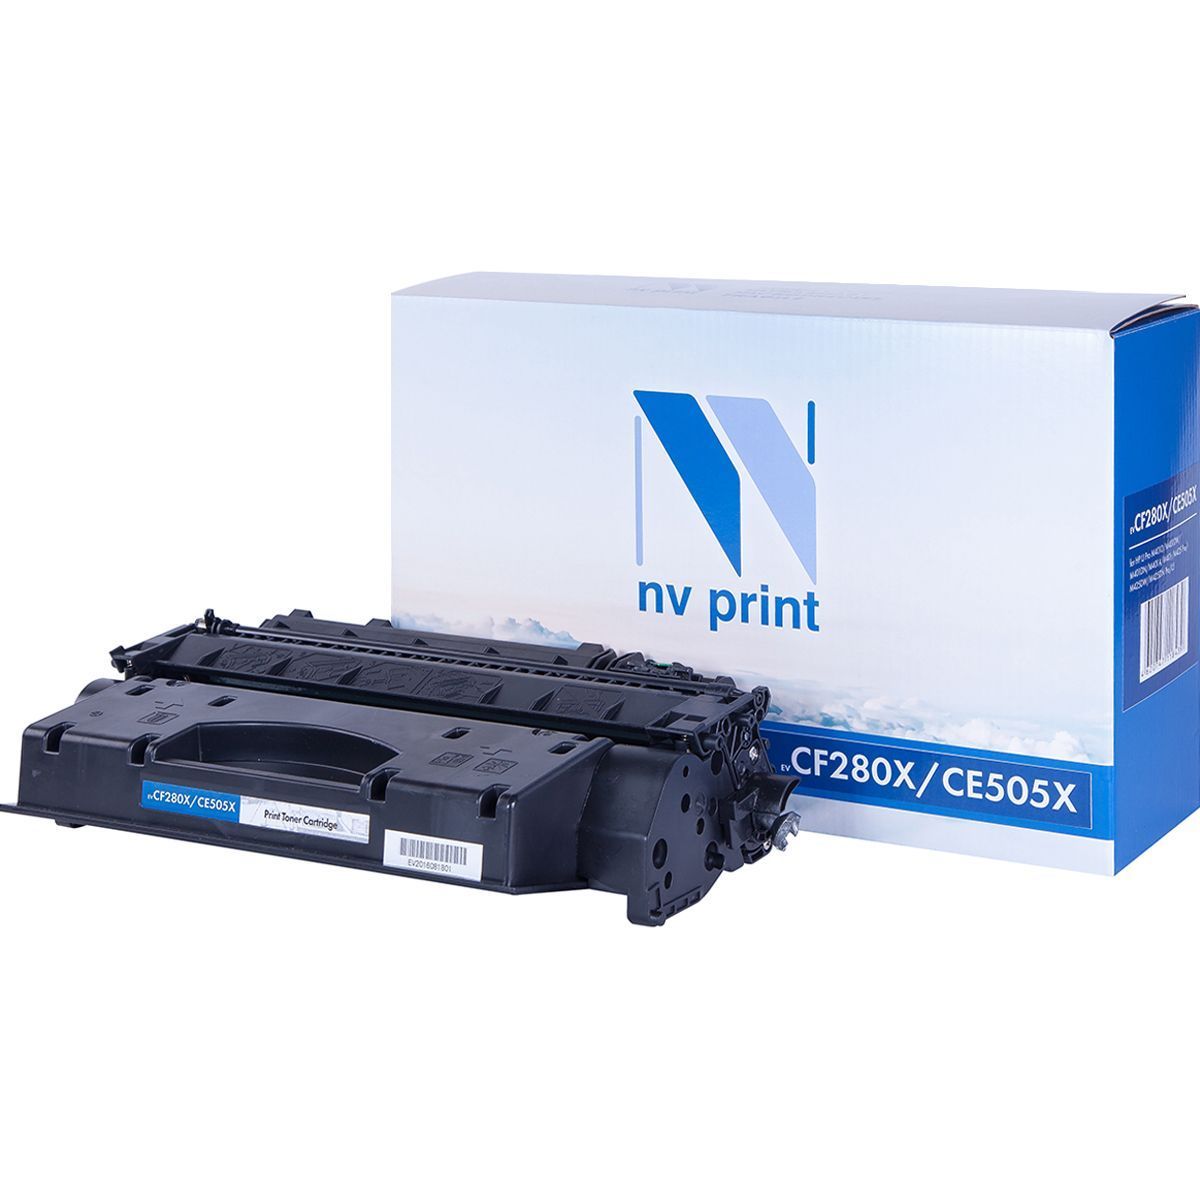  NV Print NV-CF280X/CE505X